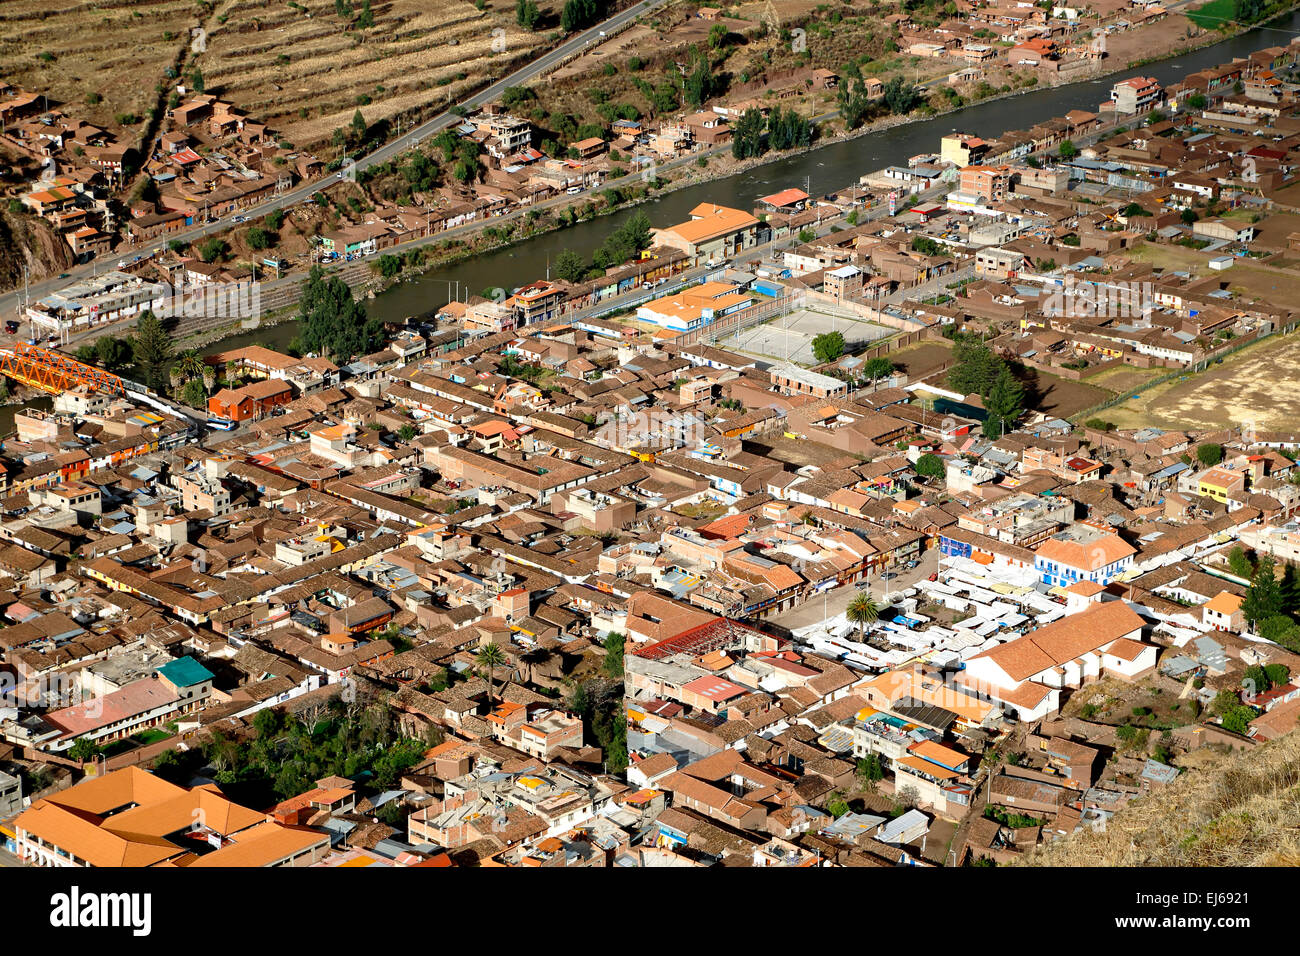 Village of Pisac, Cusco, Peru Stock Photo